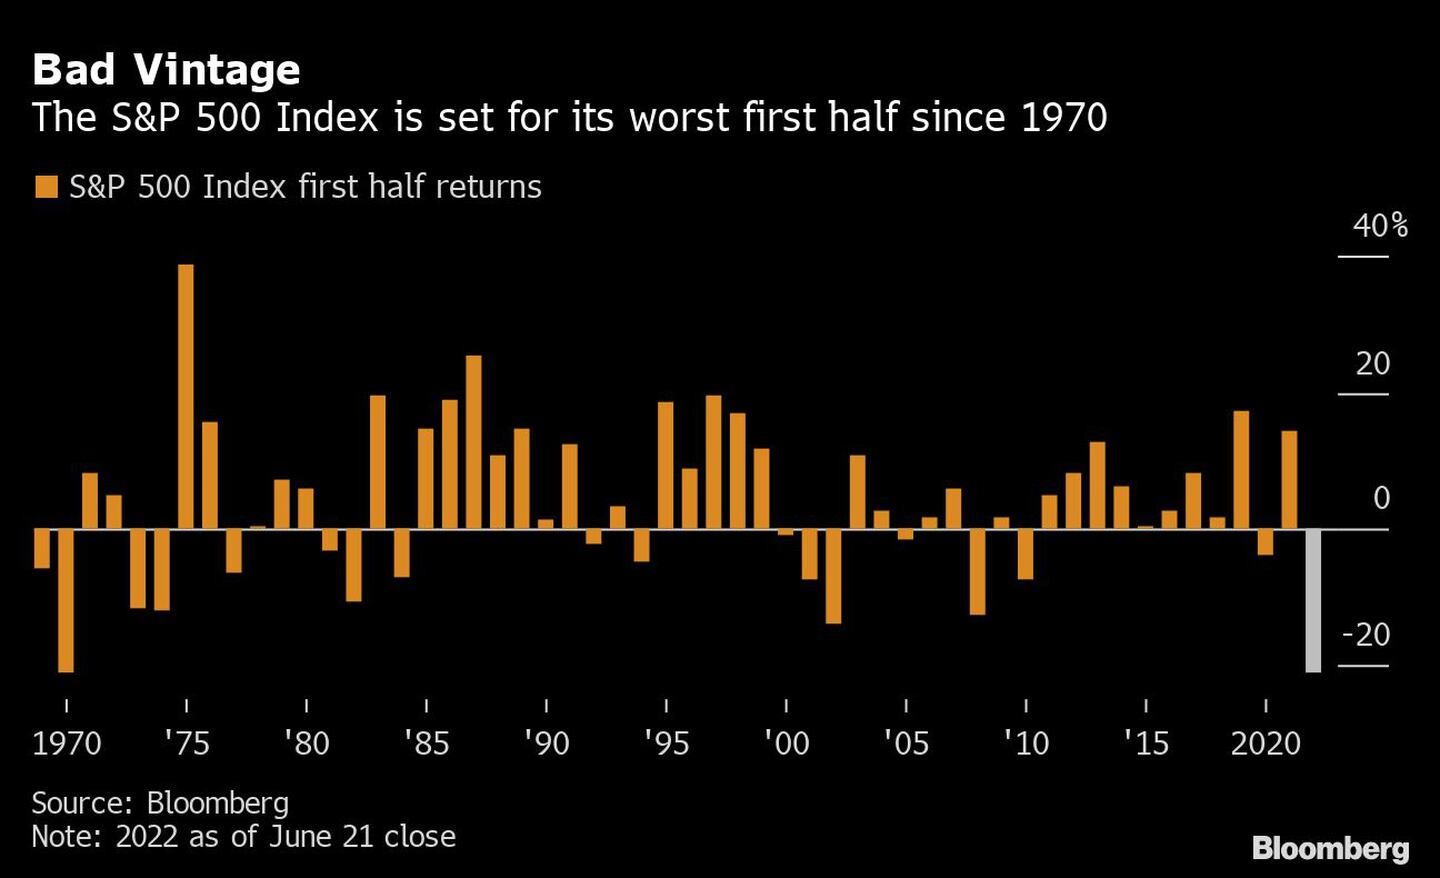 Retornos del S&P a lo largo de los añosdfd